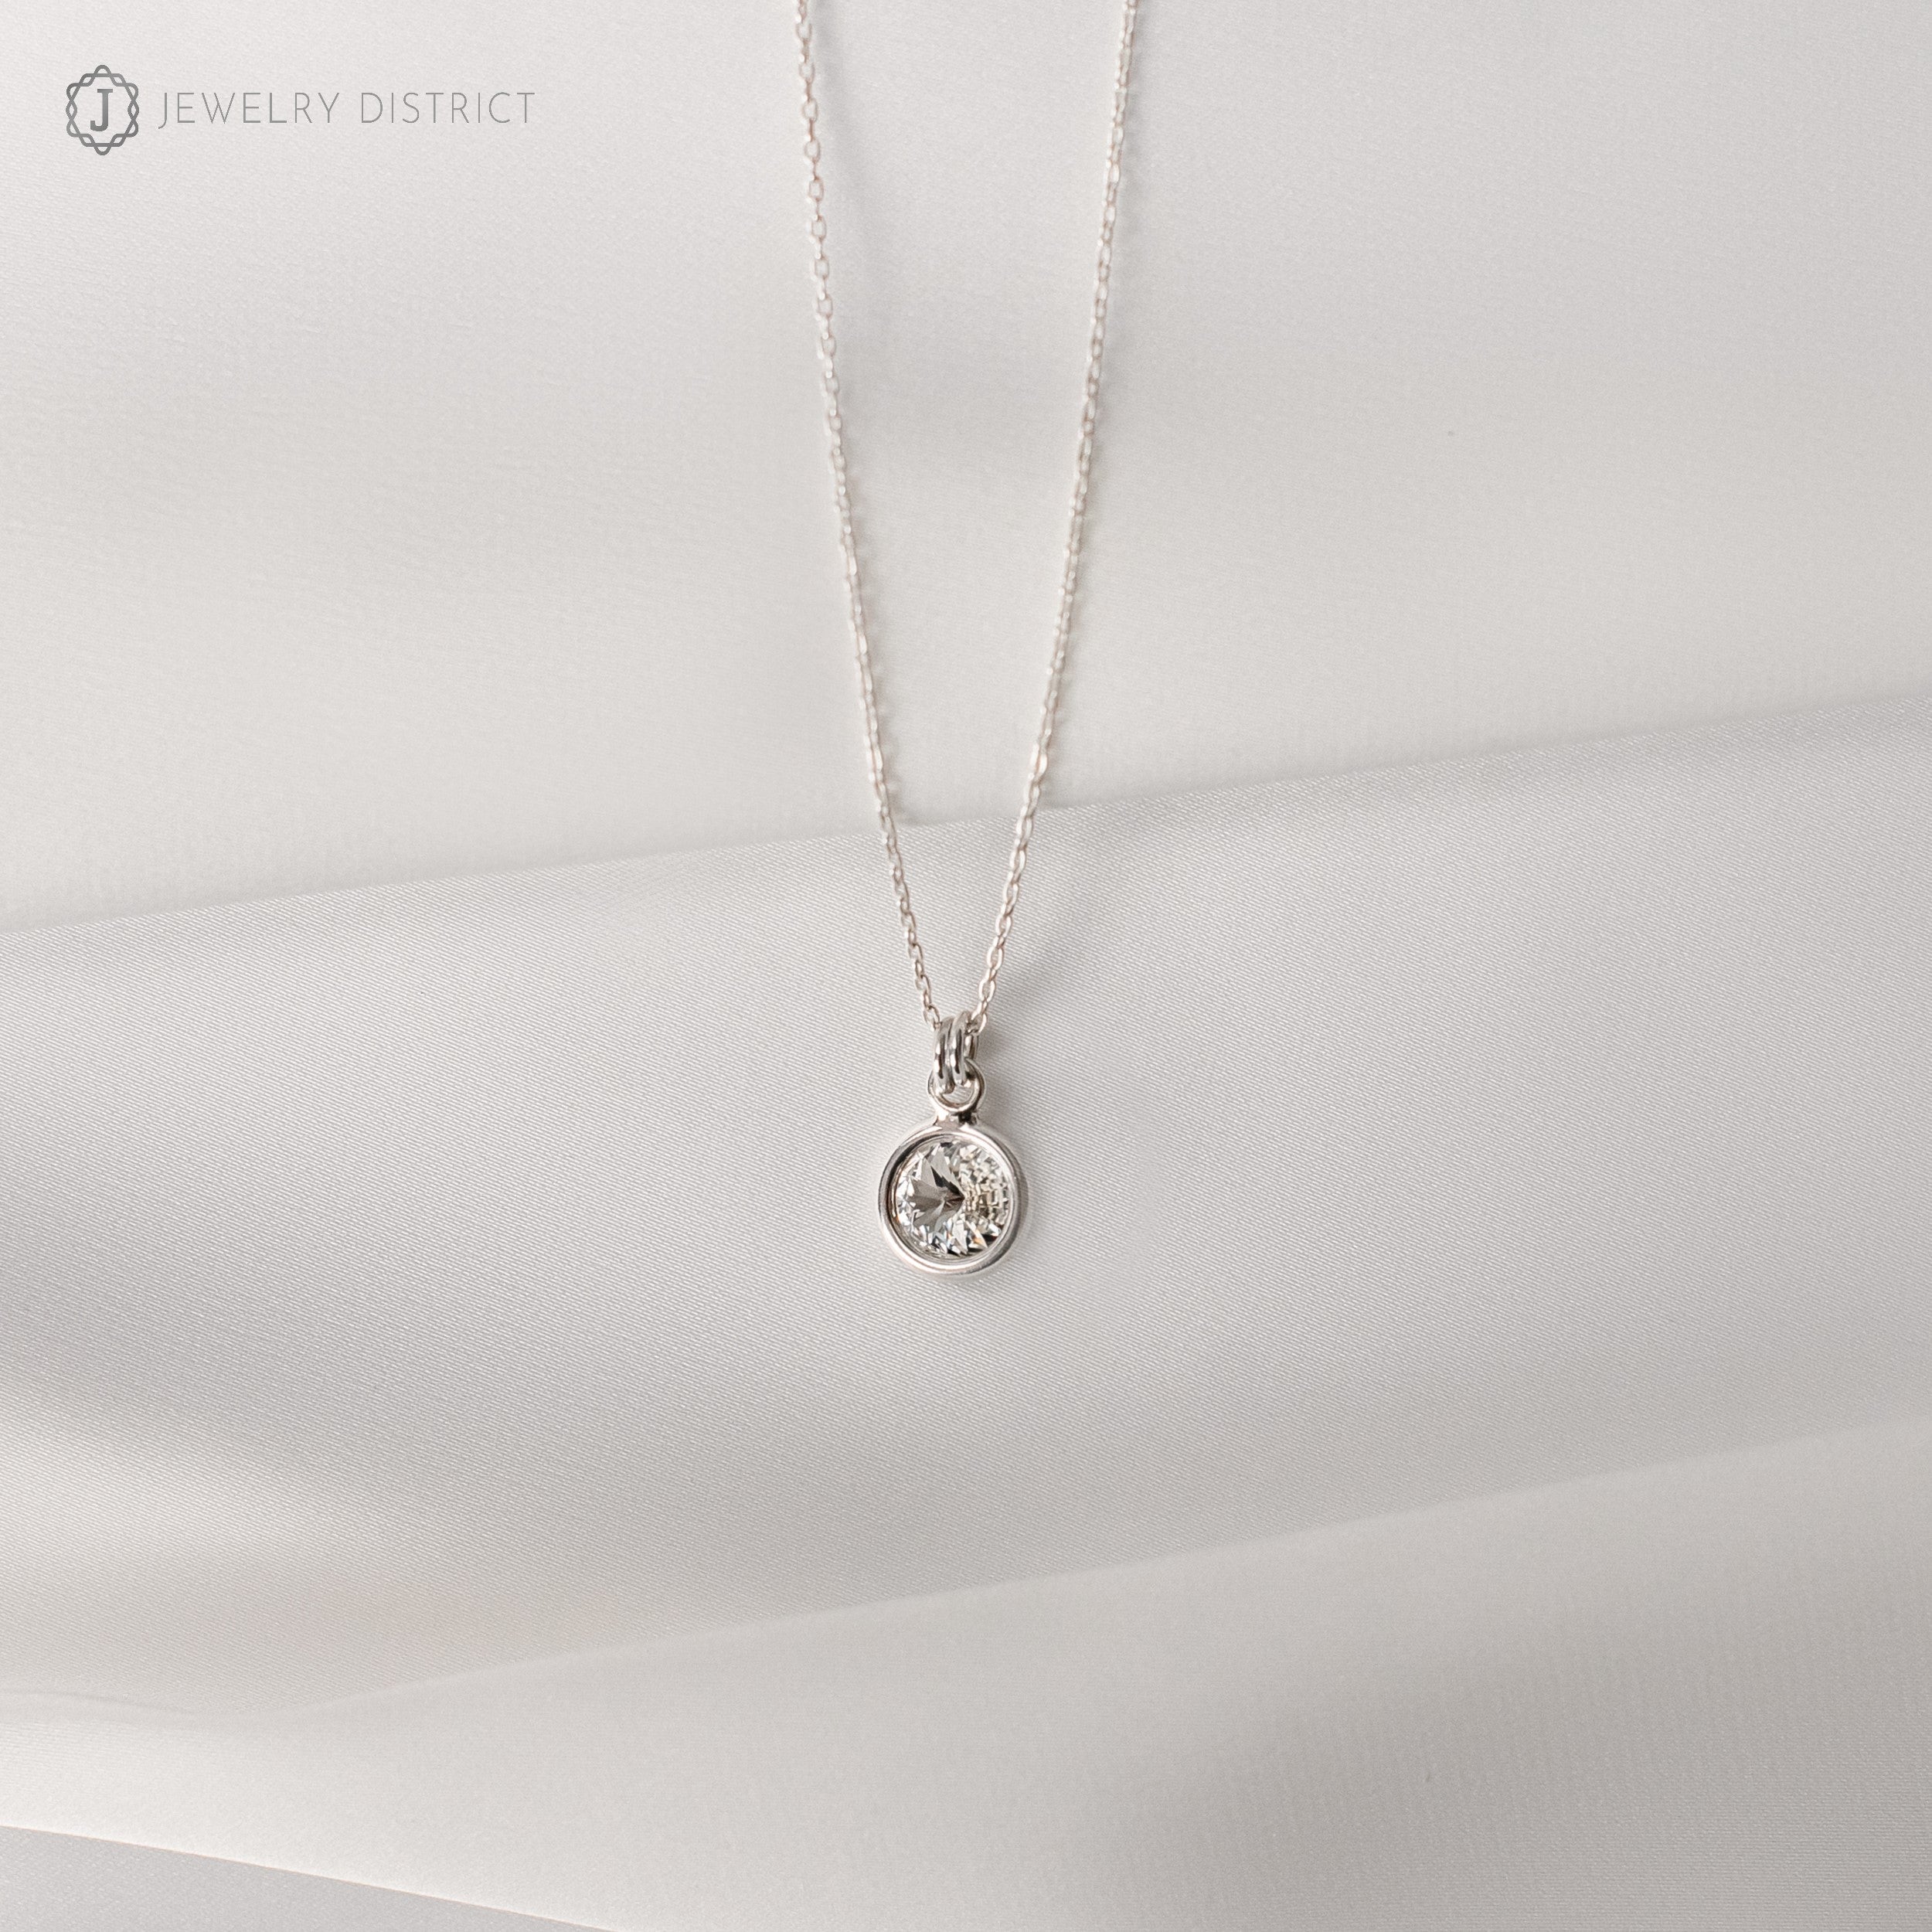 Damen Halskette mit Swarovski® - Kristall Sterling Silber 925